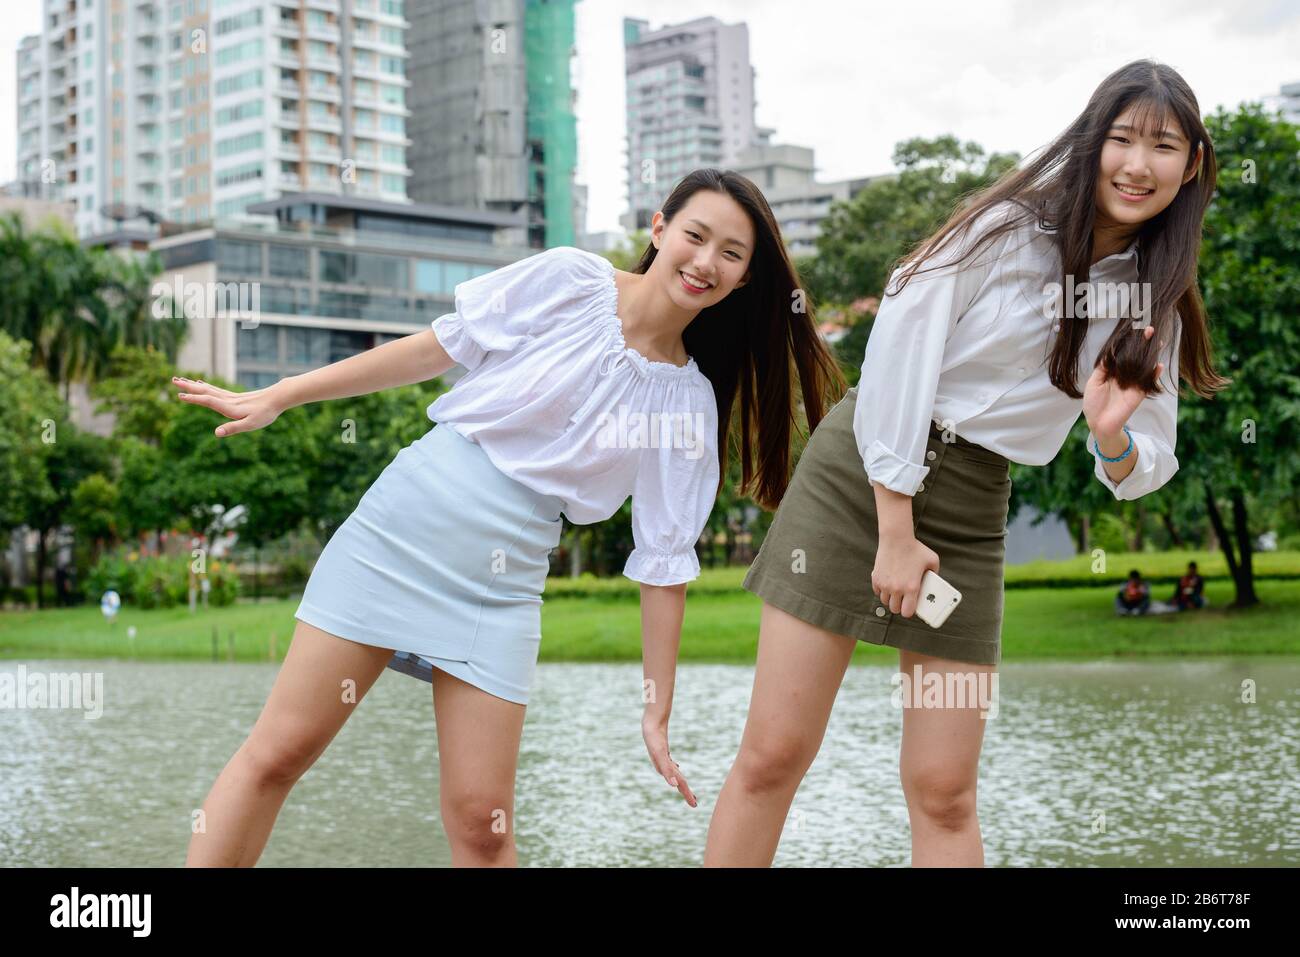 Zwei fröhliche junge, schöne asiatische Teenager-Mädchen, die zusammen im Park spielen Stockfoto